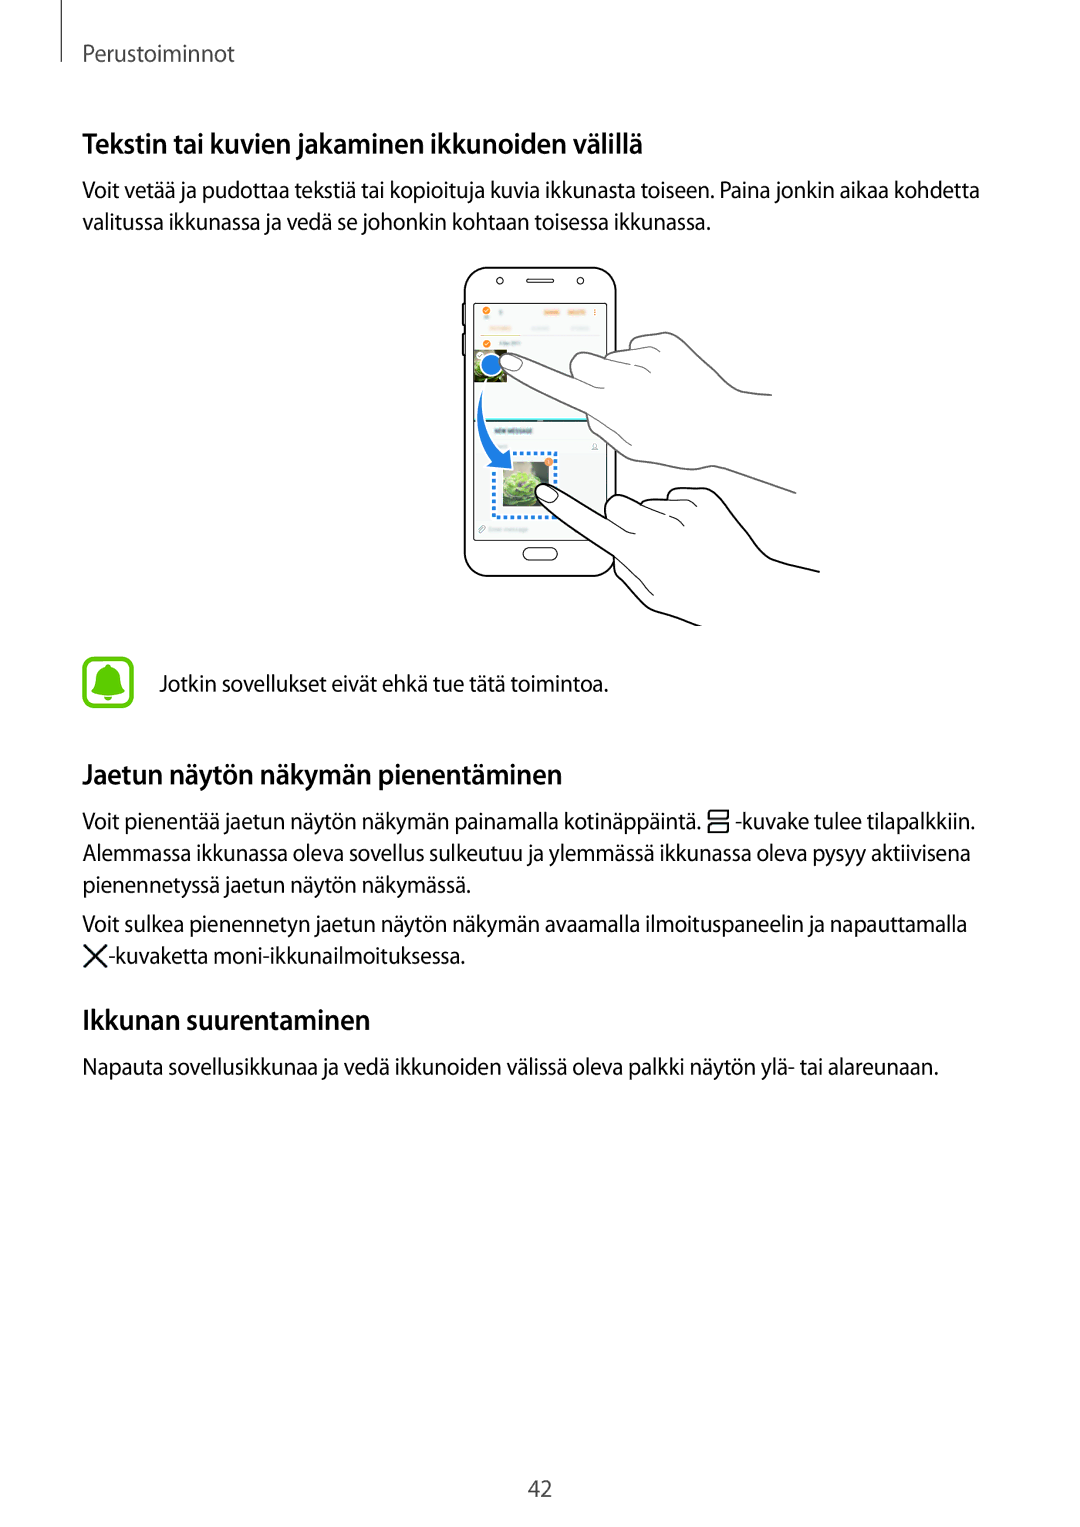 Samsung SM-J330FZDDNEE manual Tekstin tai kuvien jakaminen ikkunoiden välillä, Jaetun näytön näkymän pienentäminen 